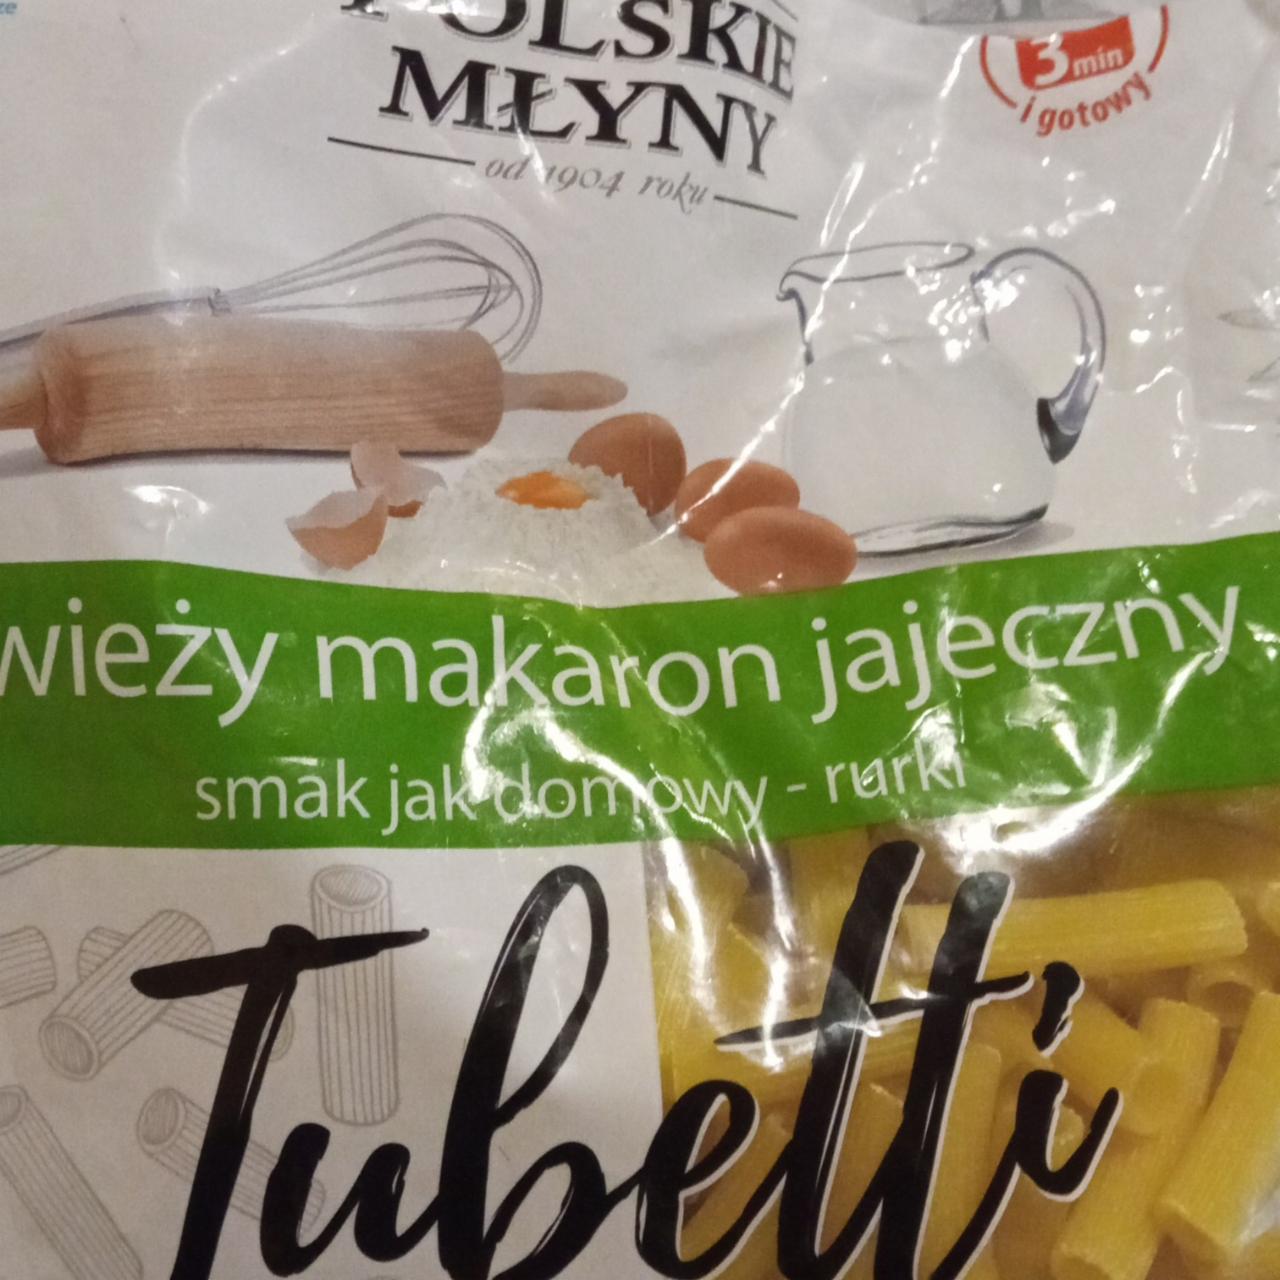 Zdjęcia - Świeży makaron jajeczny tubetti Polskie młyny